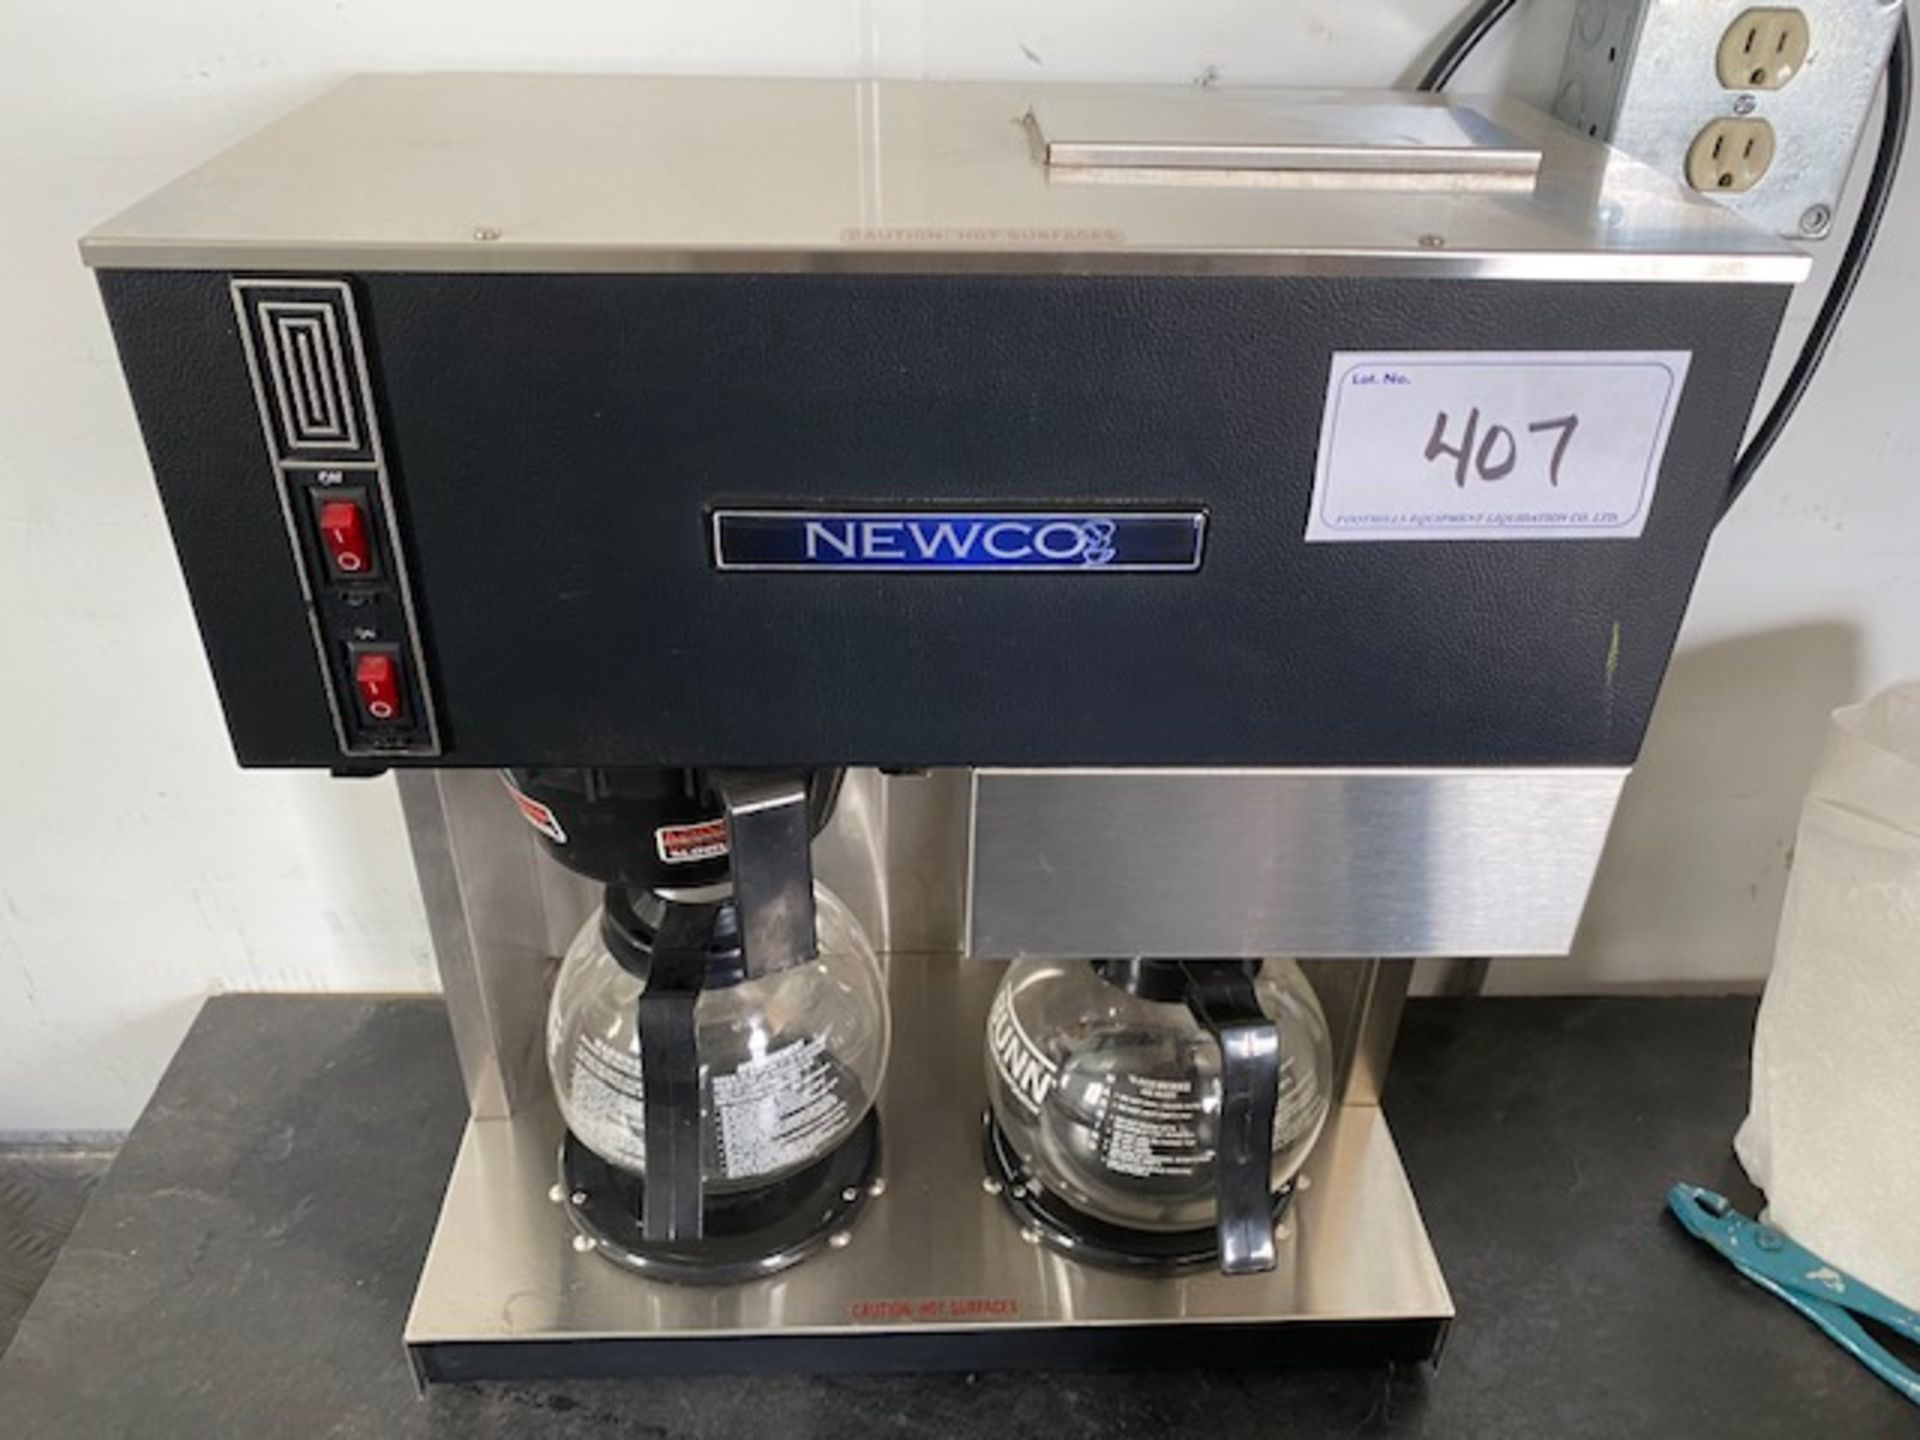 NEWCO POUR THROUGH COFFEE MAKER